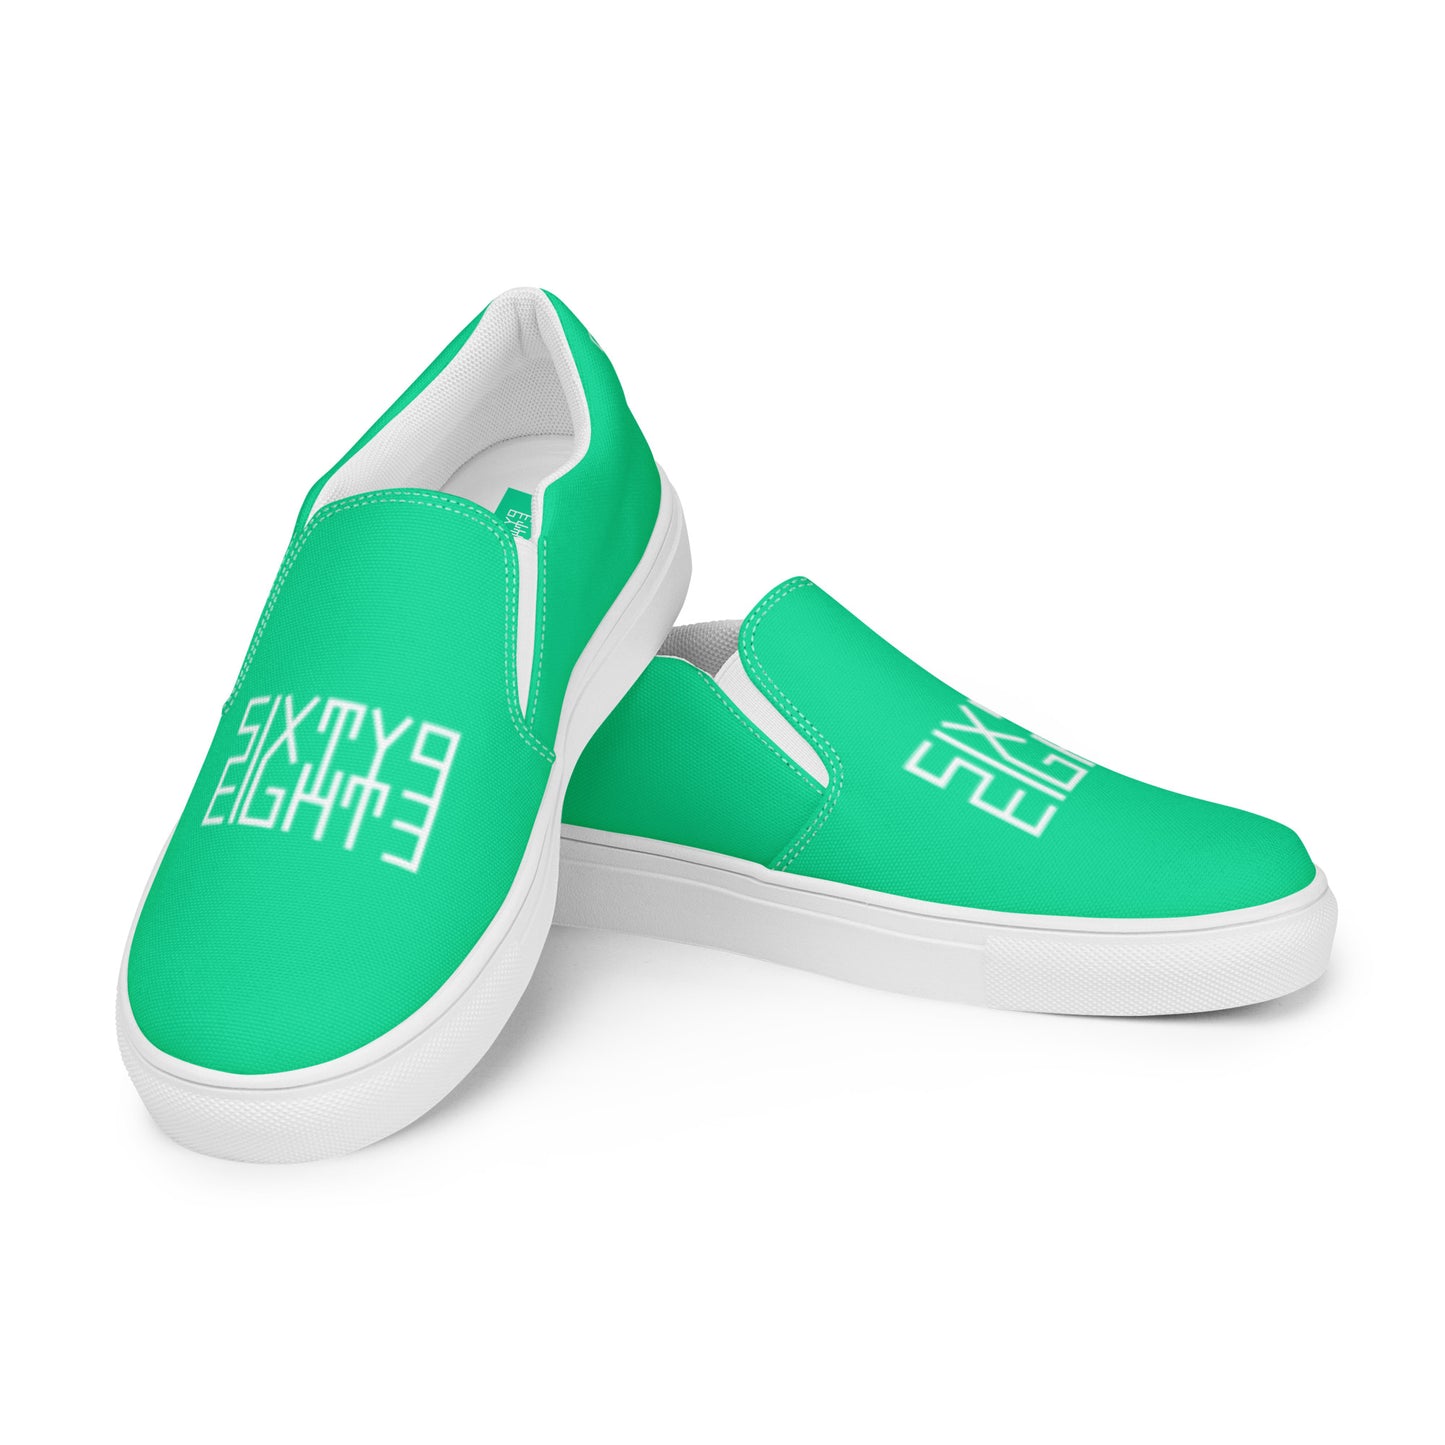 Sixty Eight 93 Logo White & Sea Green Men's Slip On Shoes